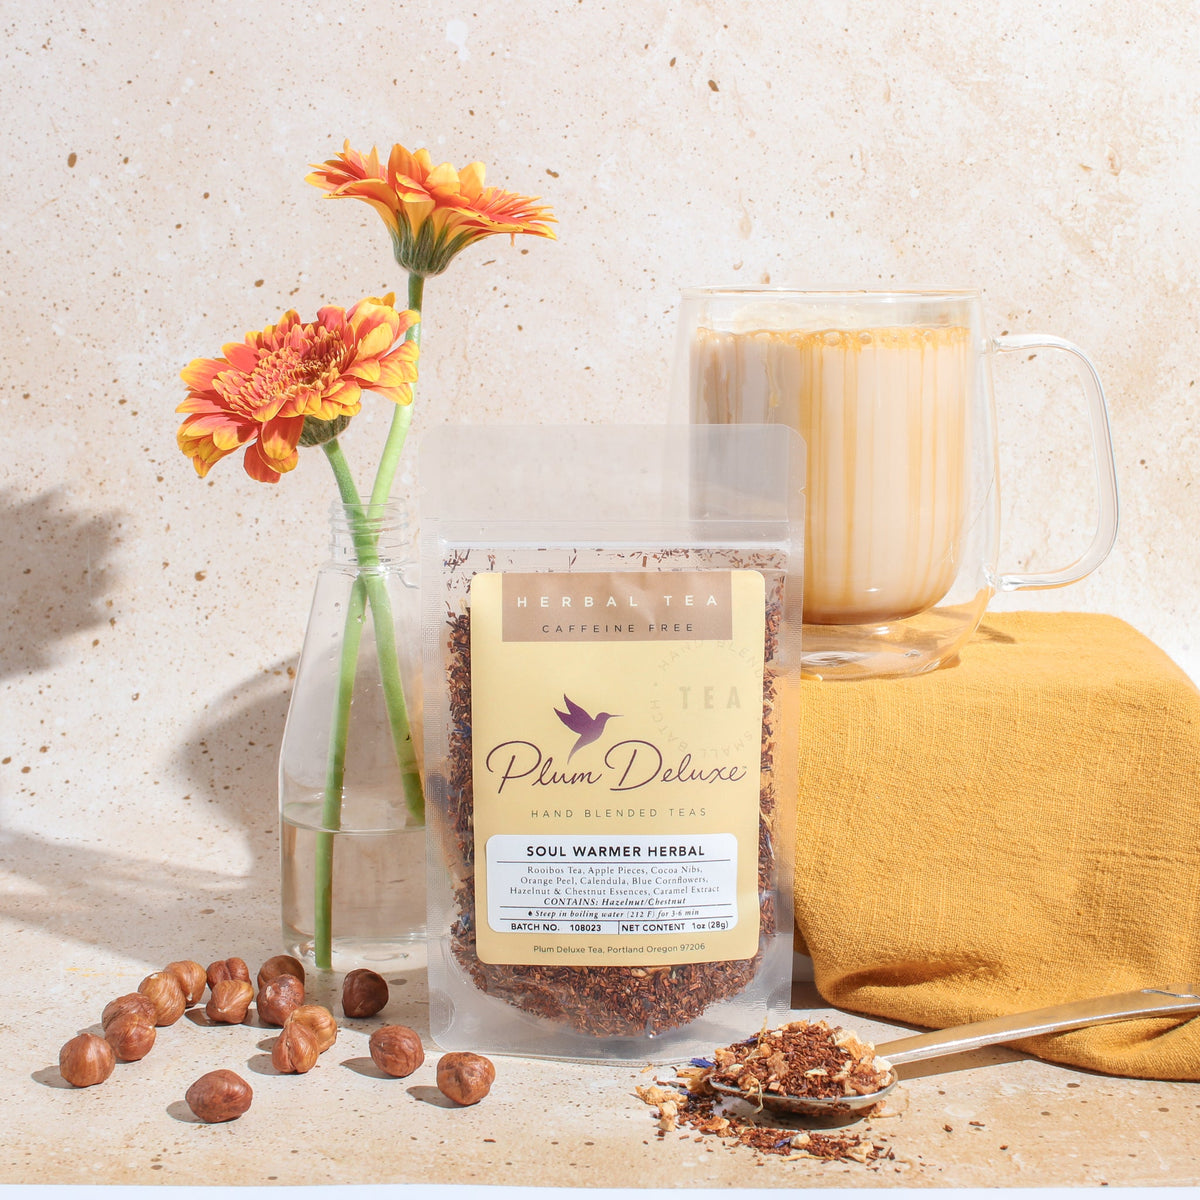 Soul Warmer Herbal Tea (Hazelnut - Chestnut - Caramel) by Plum Deluxe Tea